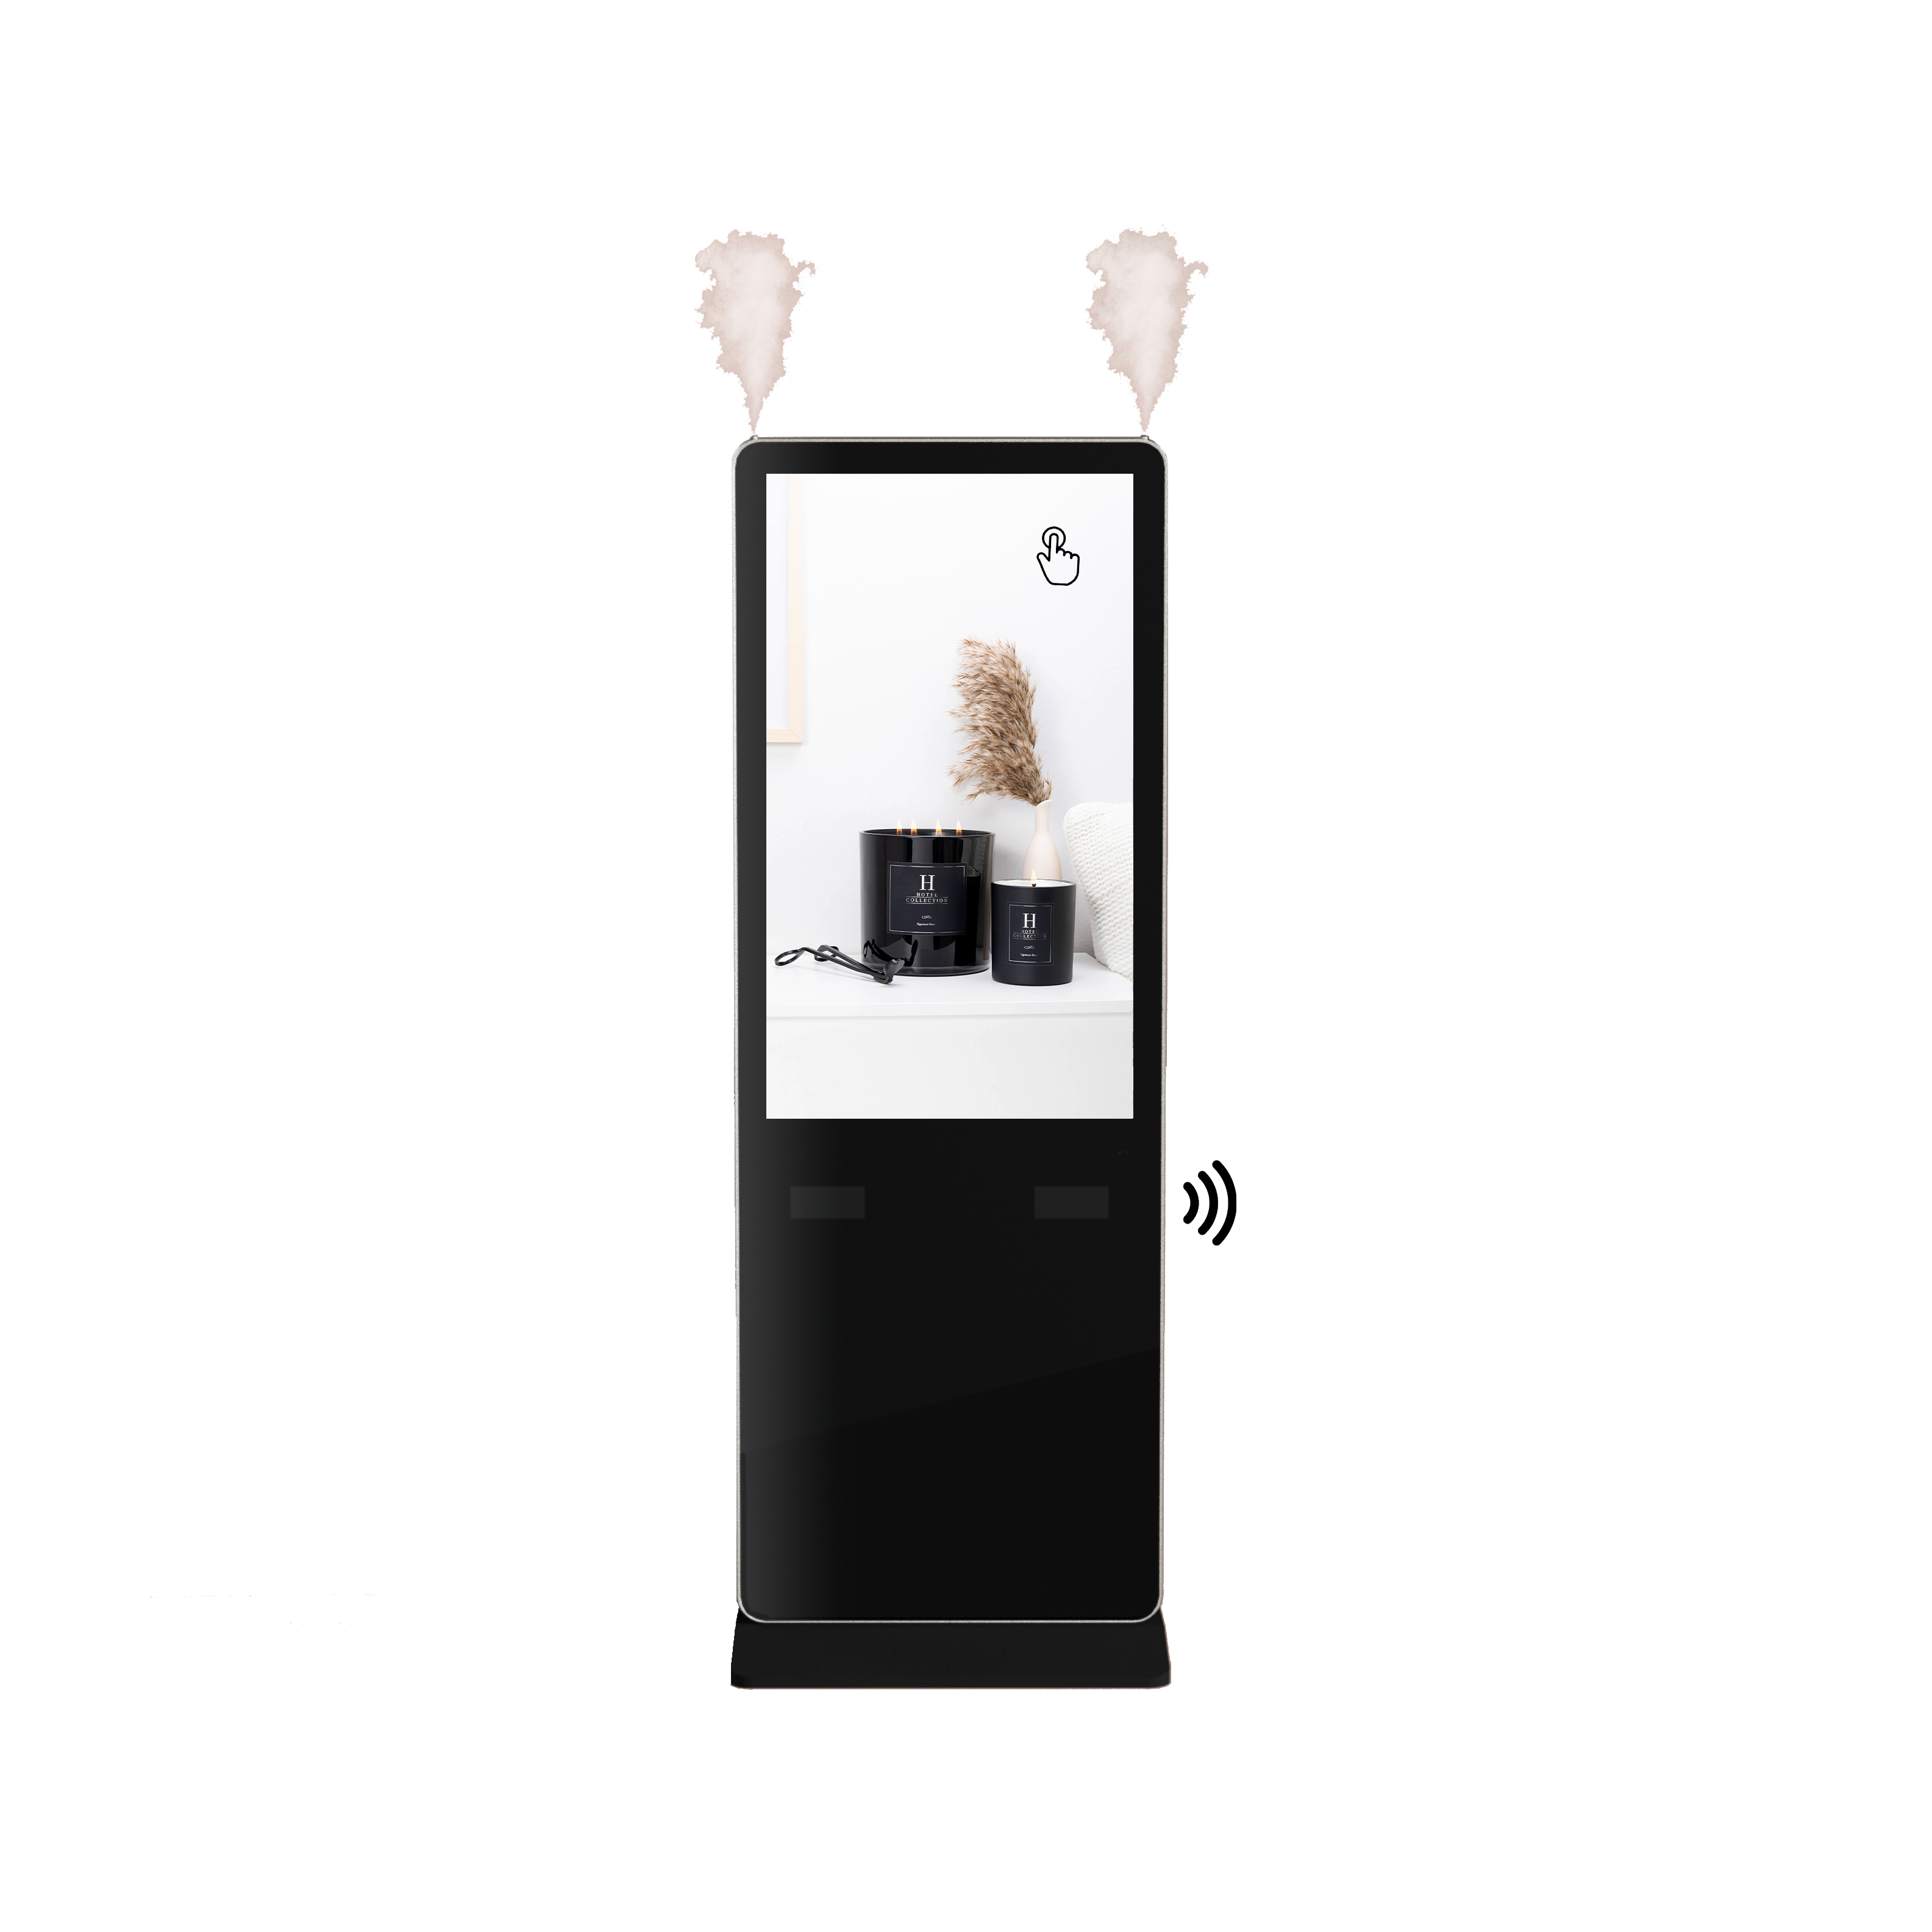 Kiosque parfumé interactif